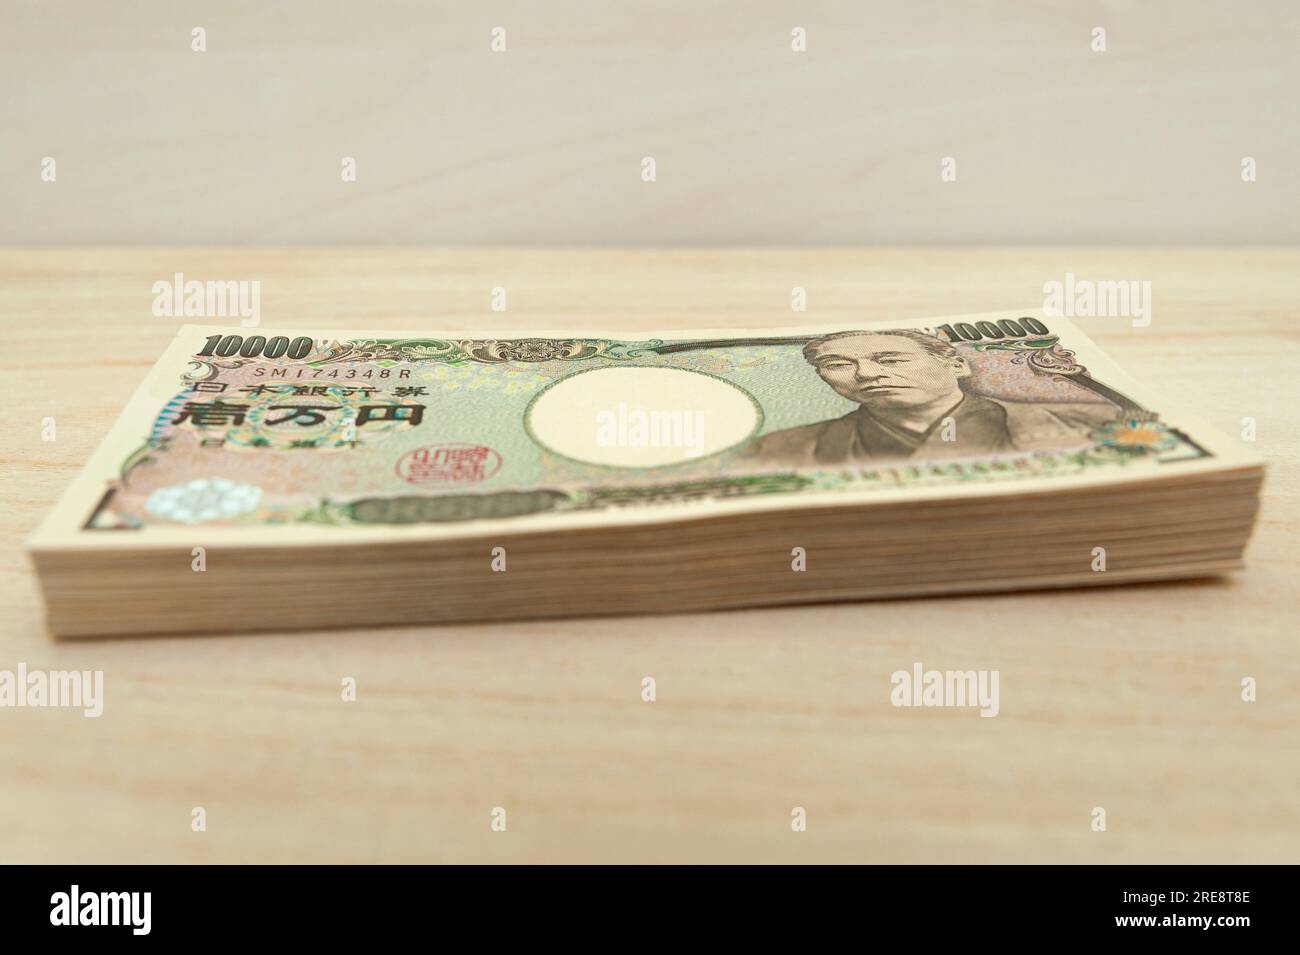 Dix mille yens (10 000 yens) billets empilés. Argent japonais. Papier-monnaie. isolé sur table en bois. Vue latérale. Banque D'Images